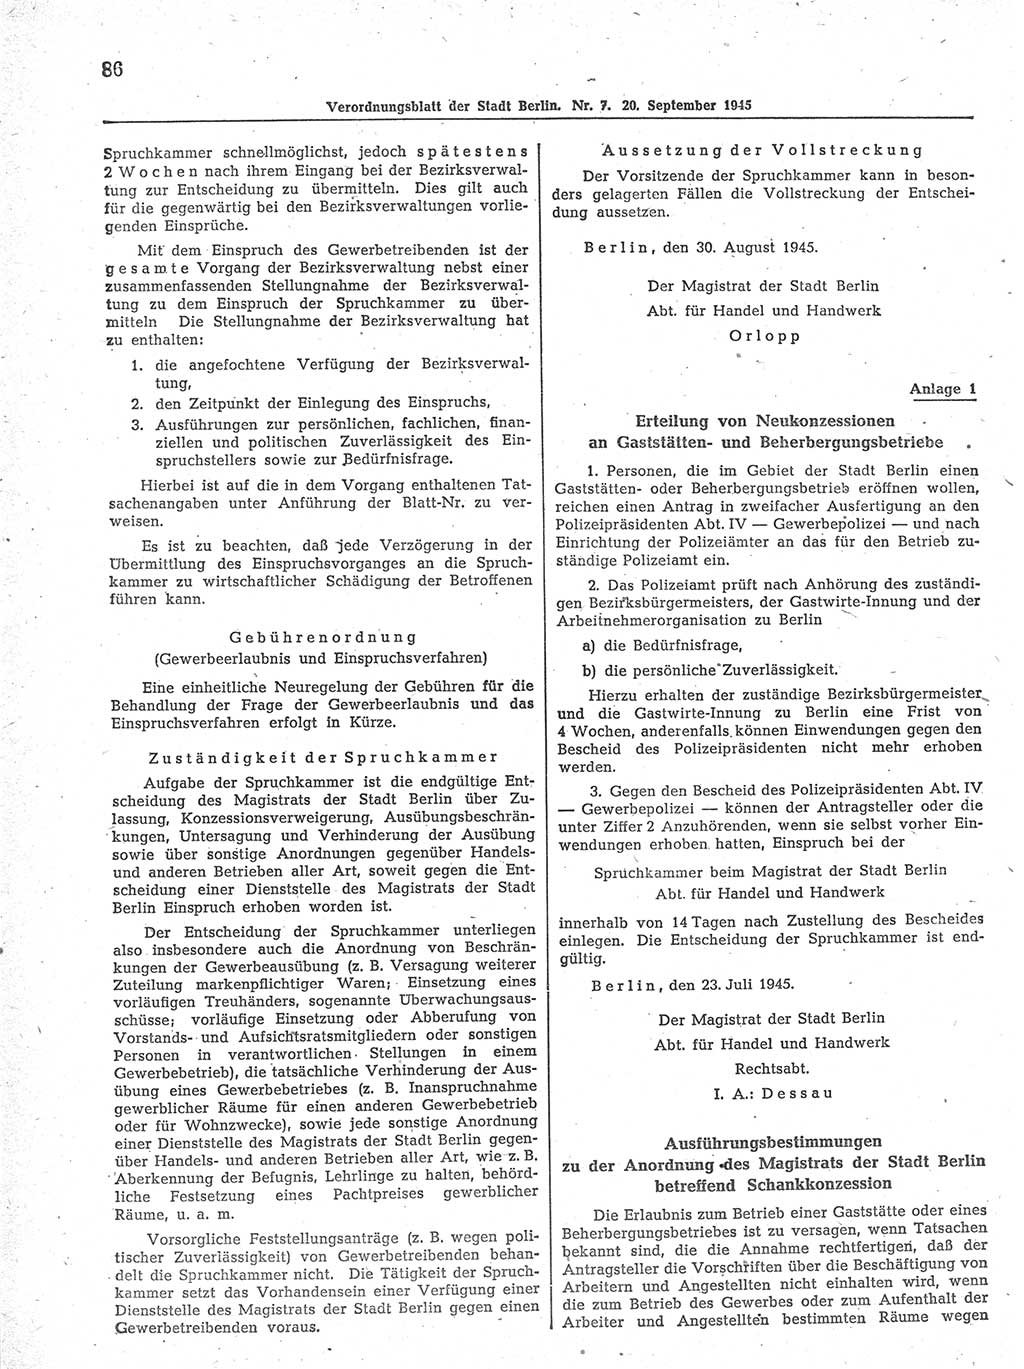 Verordnungsblatt (VOBl.) der Stadt Berlin 1945, Seite 86 (VOBl. Bln. 1945, S. 86)